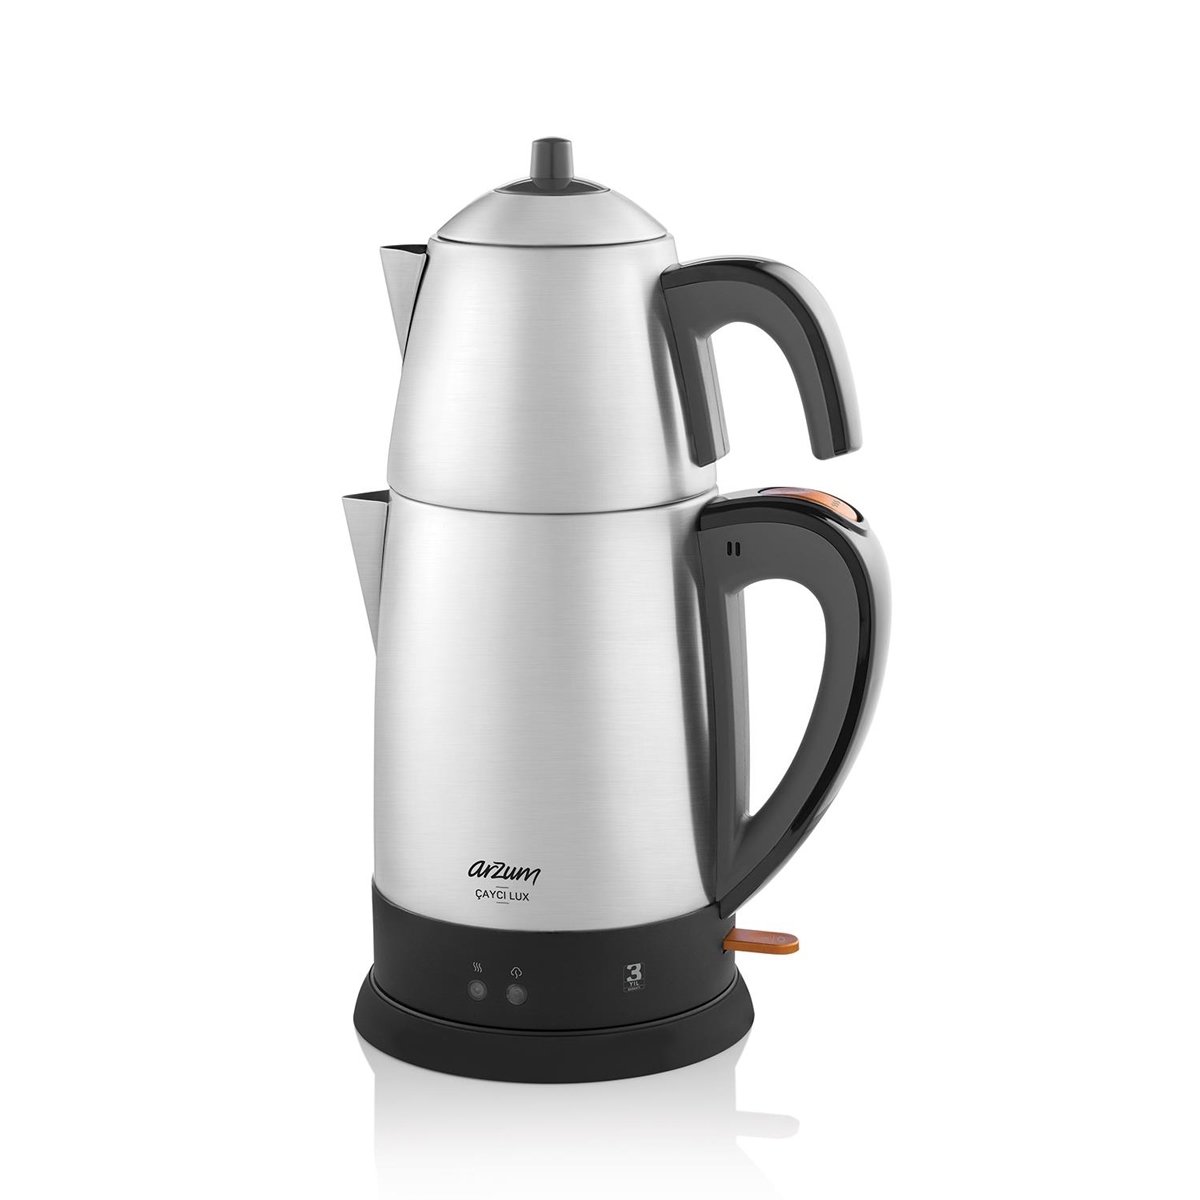 Arzum Çaycı Lux Çay Makinesi - Paslanmaz Çelik